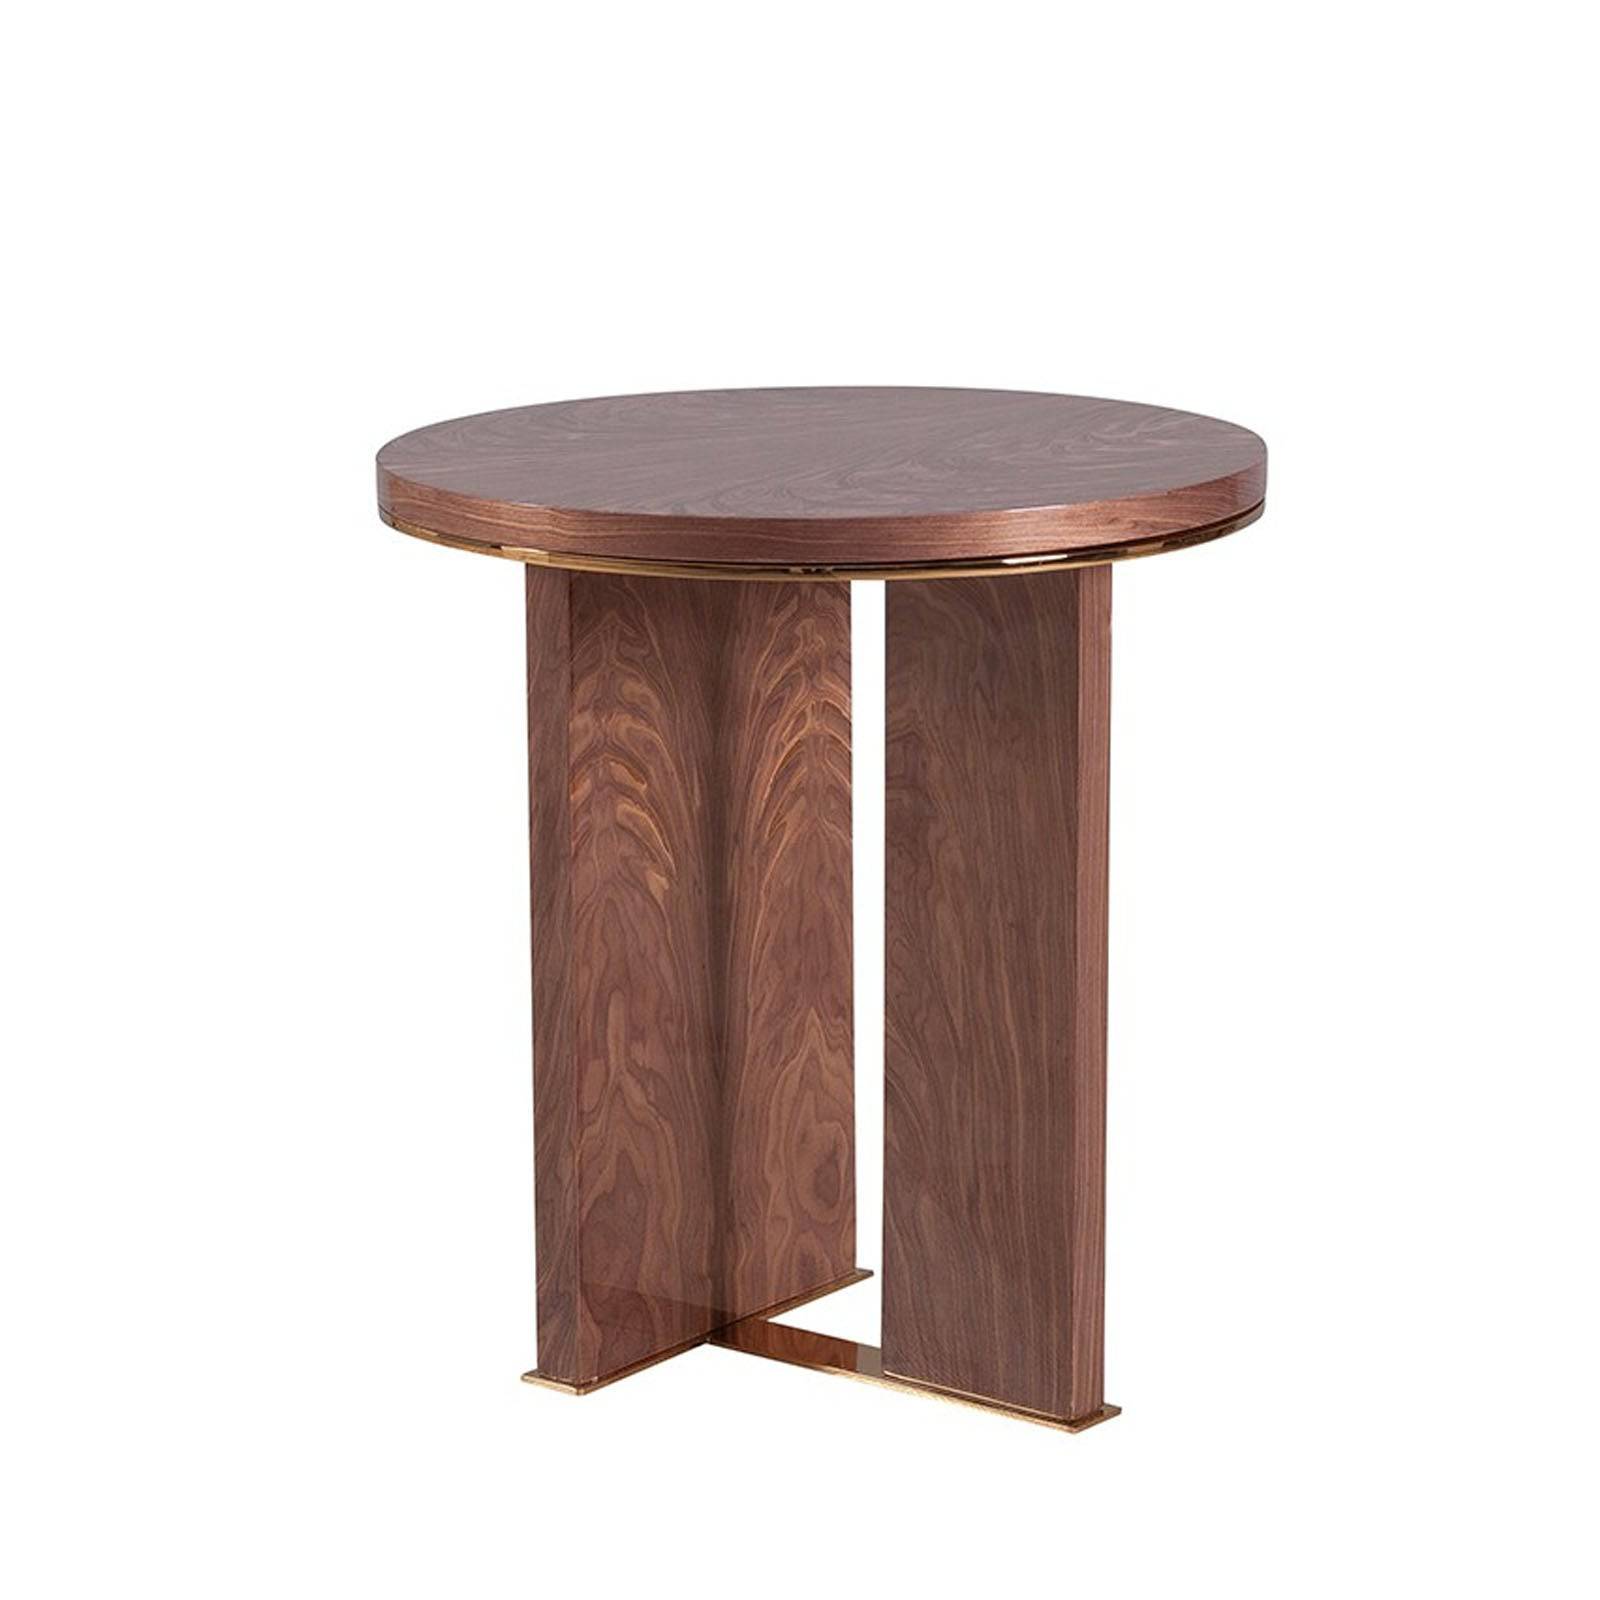 Aura Side Table Aura-Side -  Side Tables | طاولة جانبية أورا - ebarza Furniture UAE | Shop Modern Furniture in Abu Dhabi & Dubai - مفروشات ايبازرا في الامارات | تسوق اثاث عصري وديكورات مميزة في دبي وابوظبي